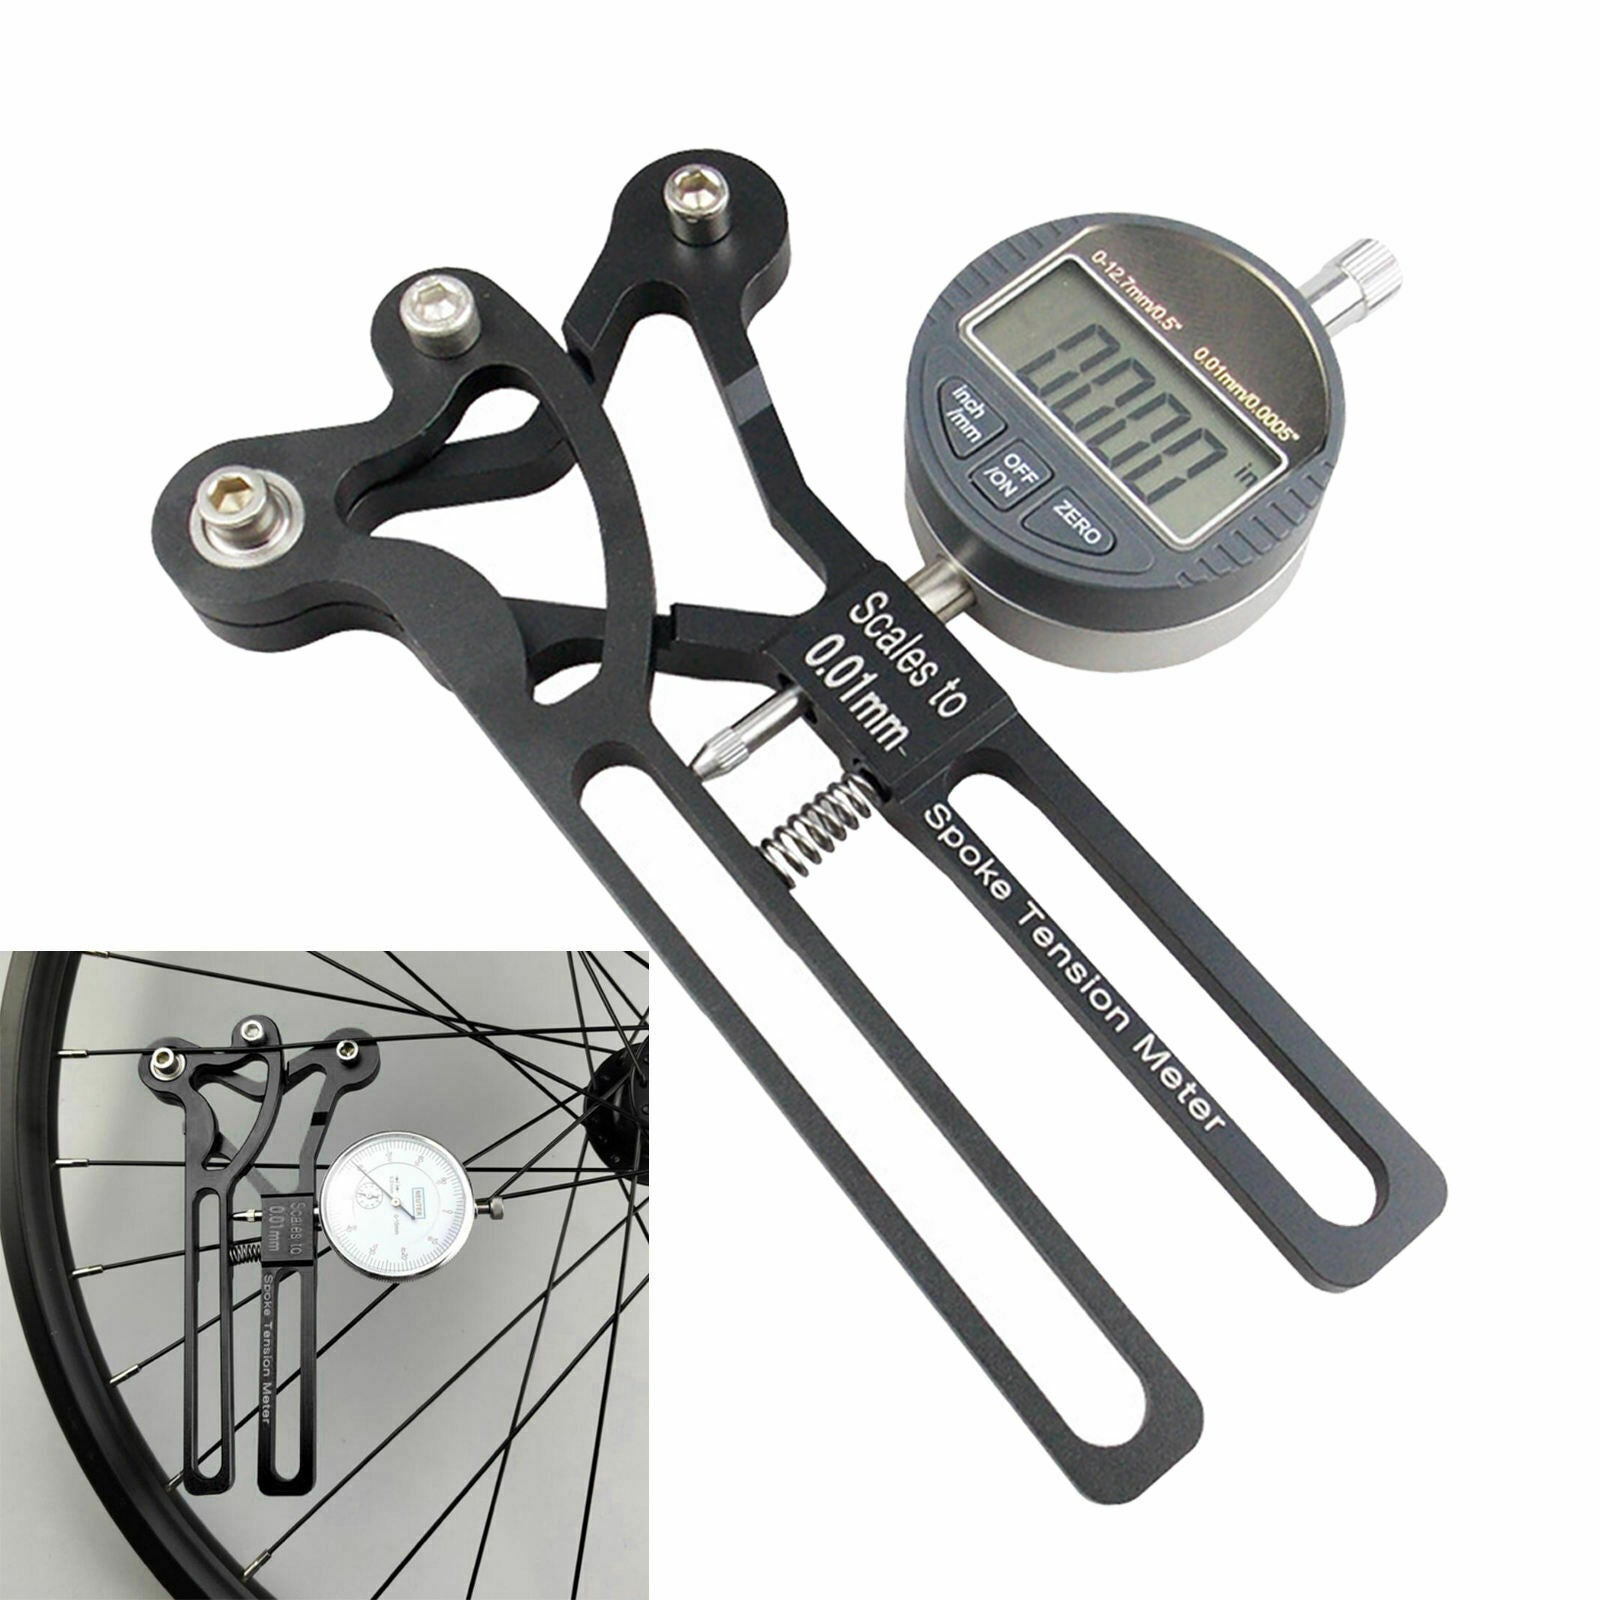 Bike Spoke Tension Meter Deluxe Bicycle Spoke Tensiometer Watch Wheel Tool Black